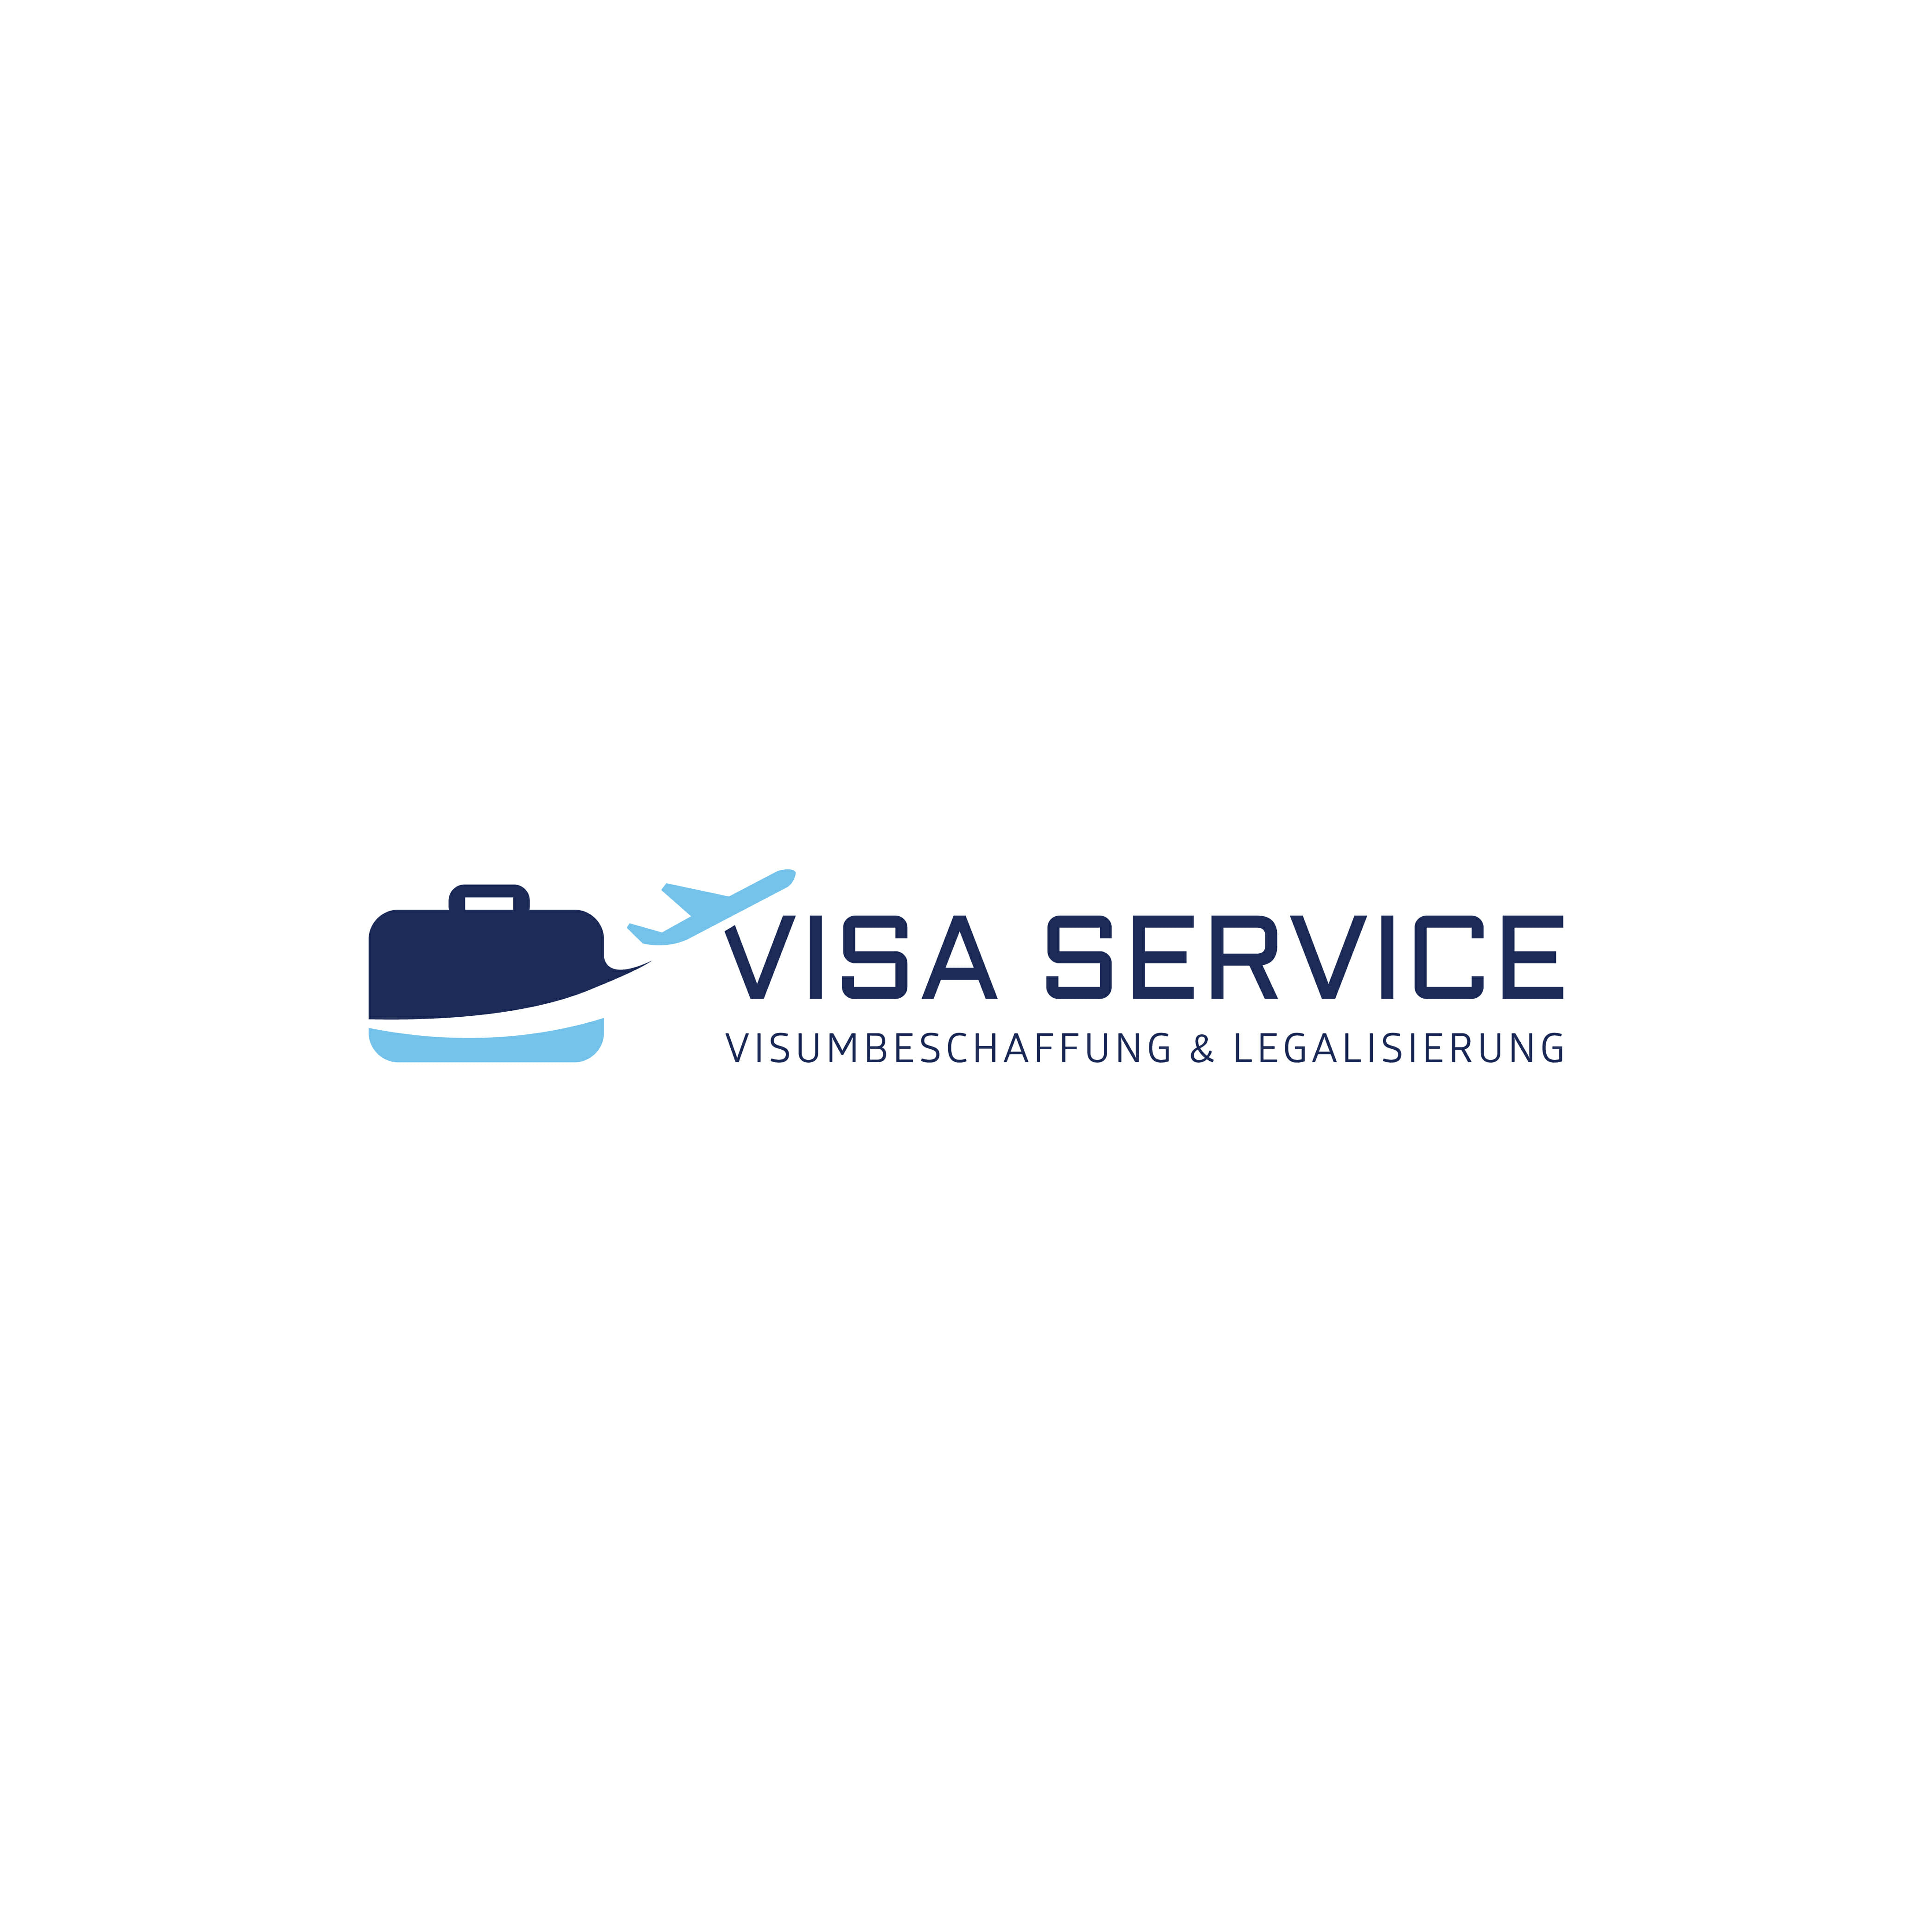 Visa service ru